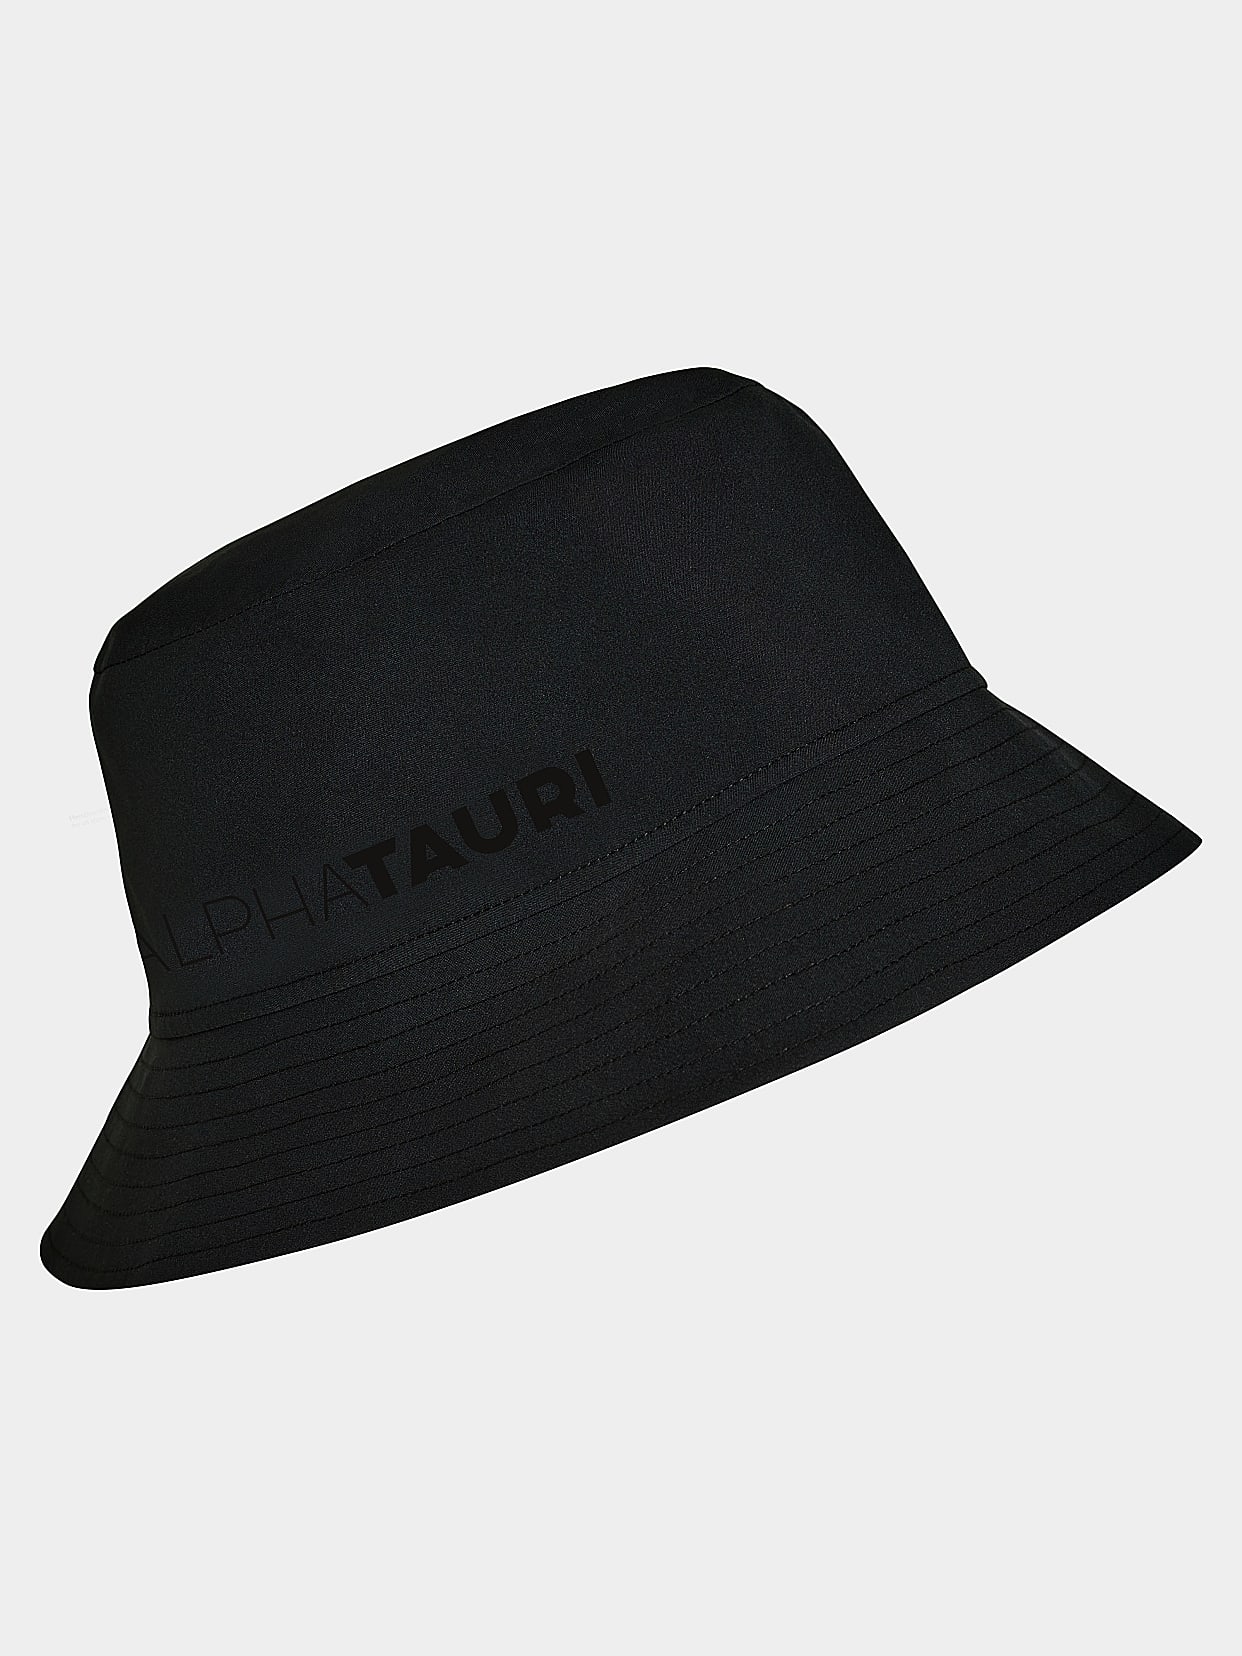 Taurobran® Bucket Hat | AVAU V1.Y7.02 | Black | AlphaTauri